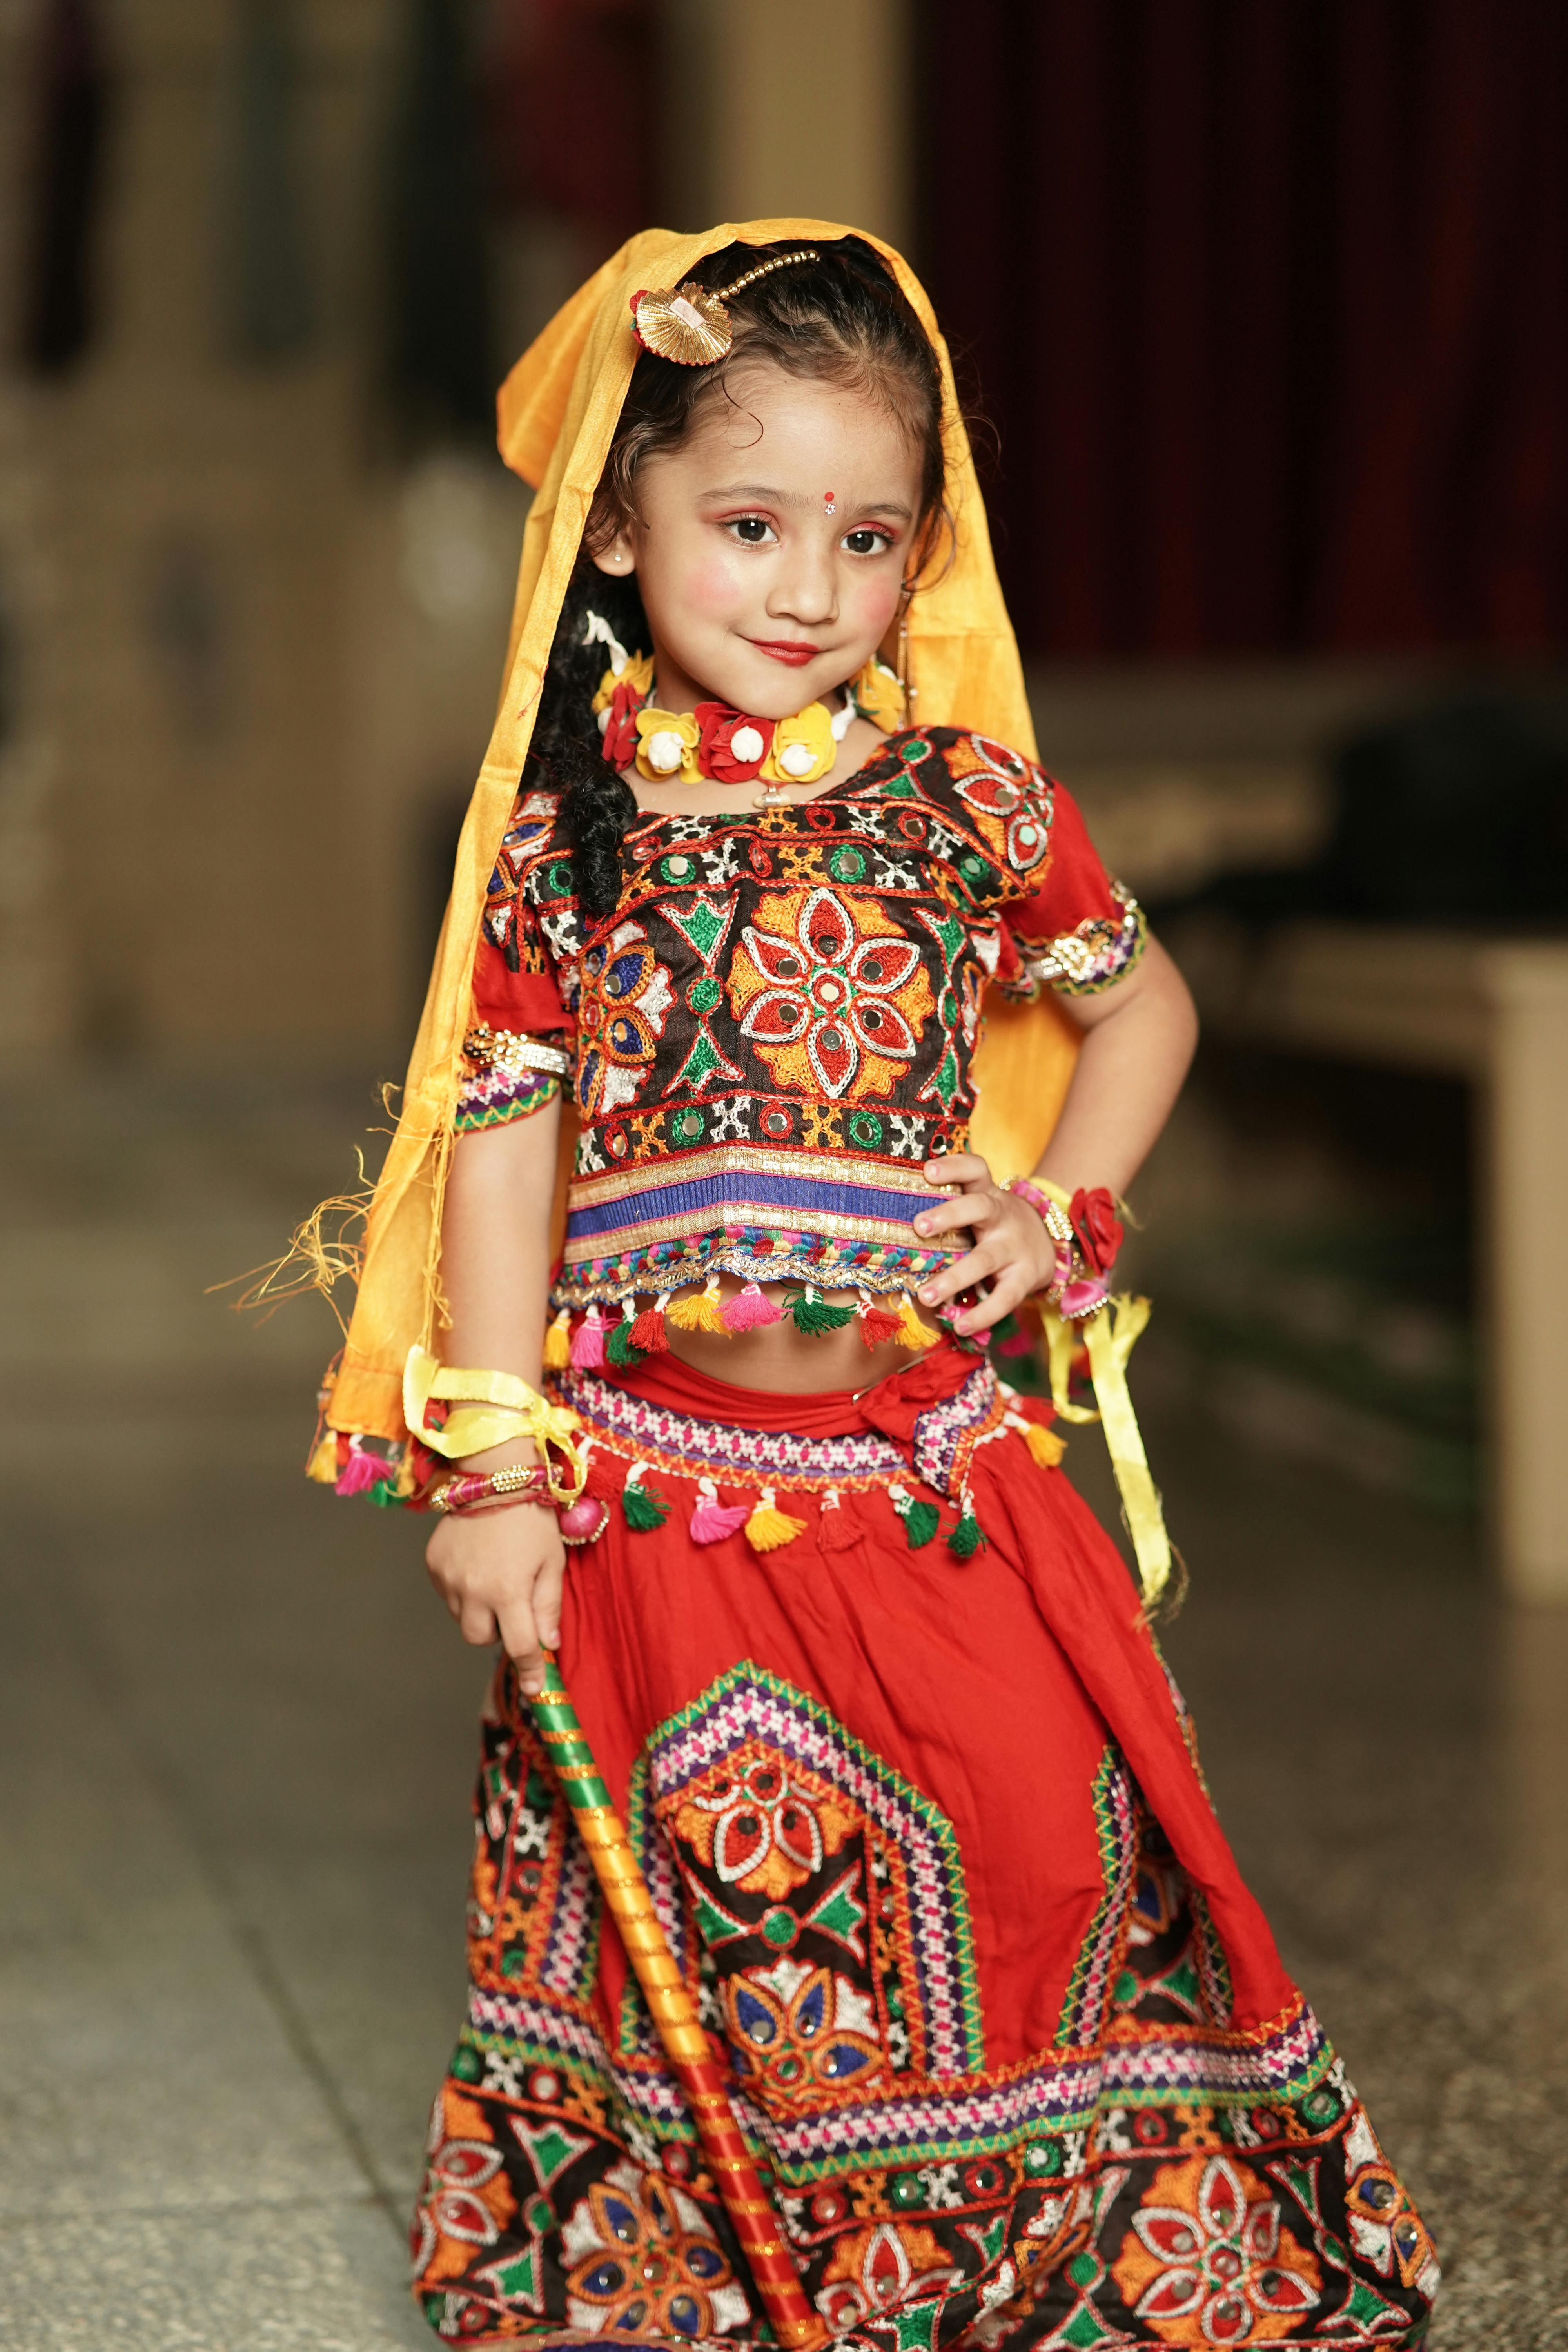 Child Fashion: गरबा के लिए बेटियों को करना है तैयार तो यहां से लें Idea -  dresses idea for baby girls-mobile